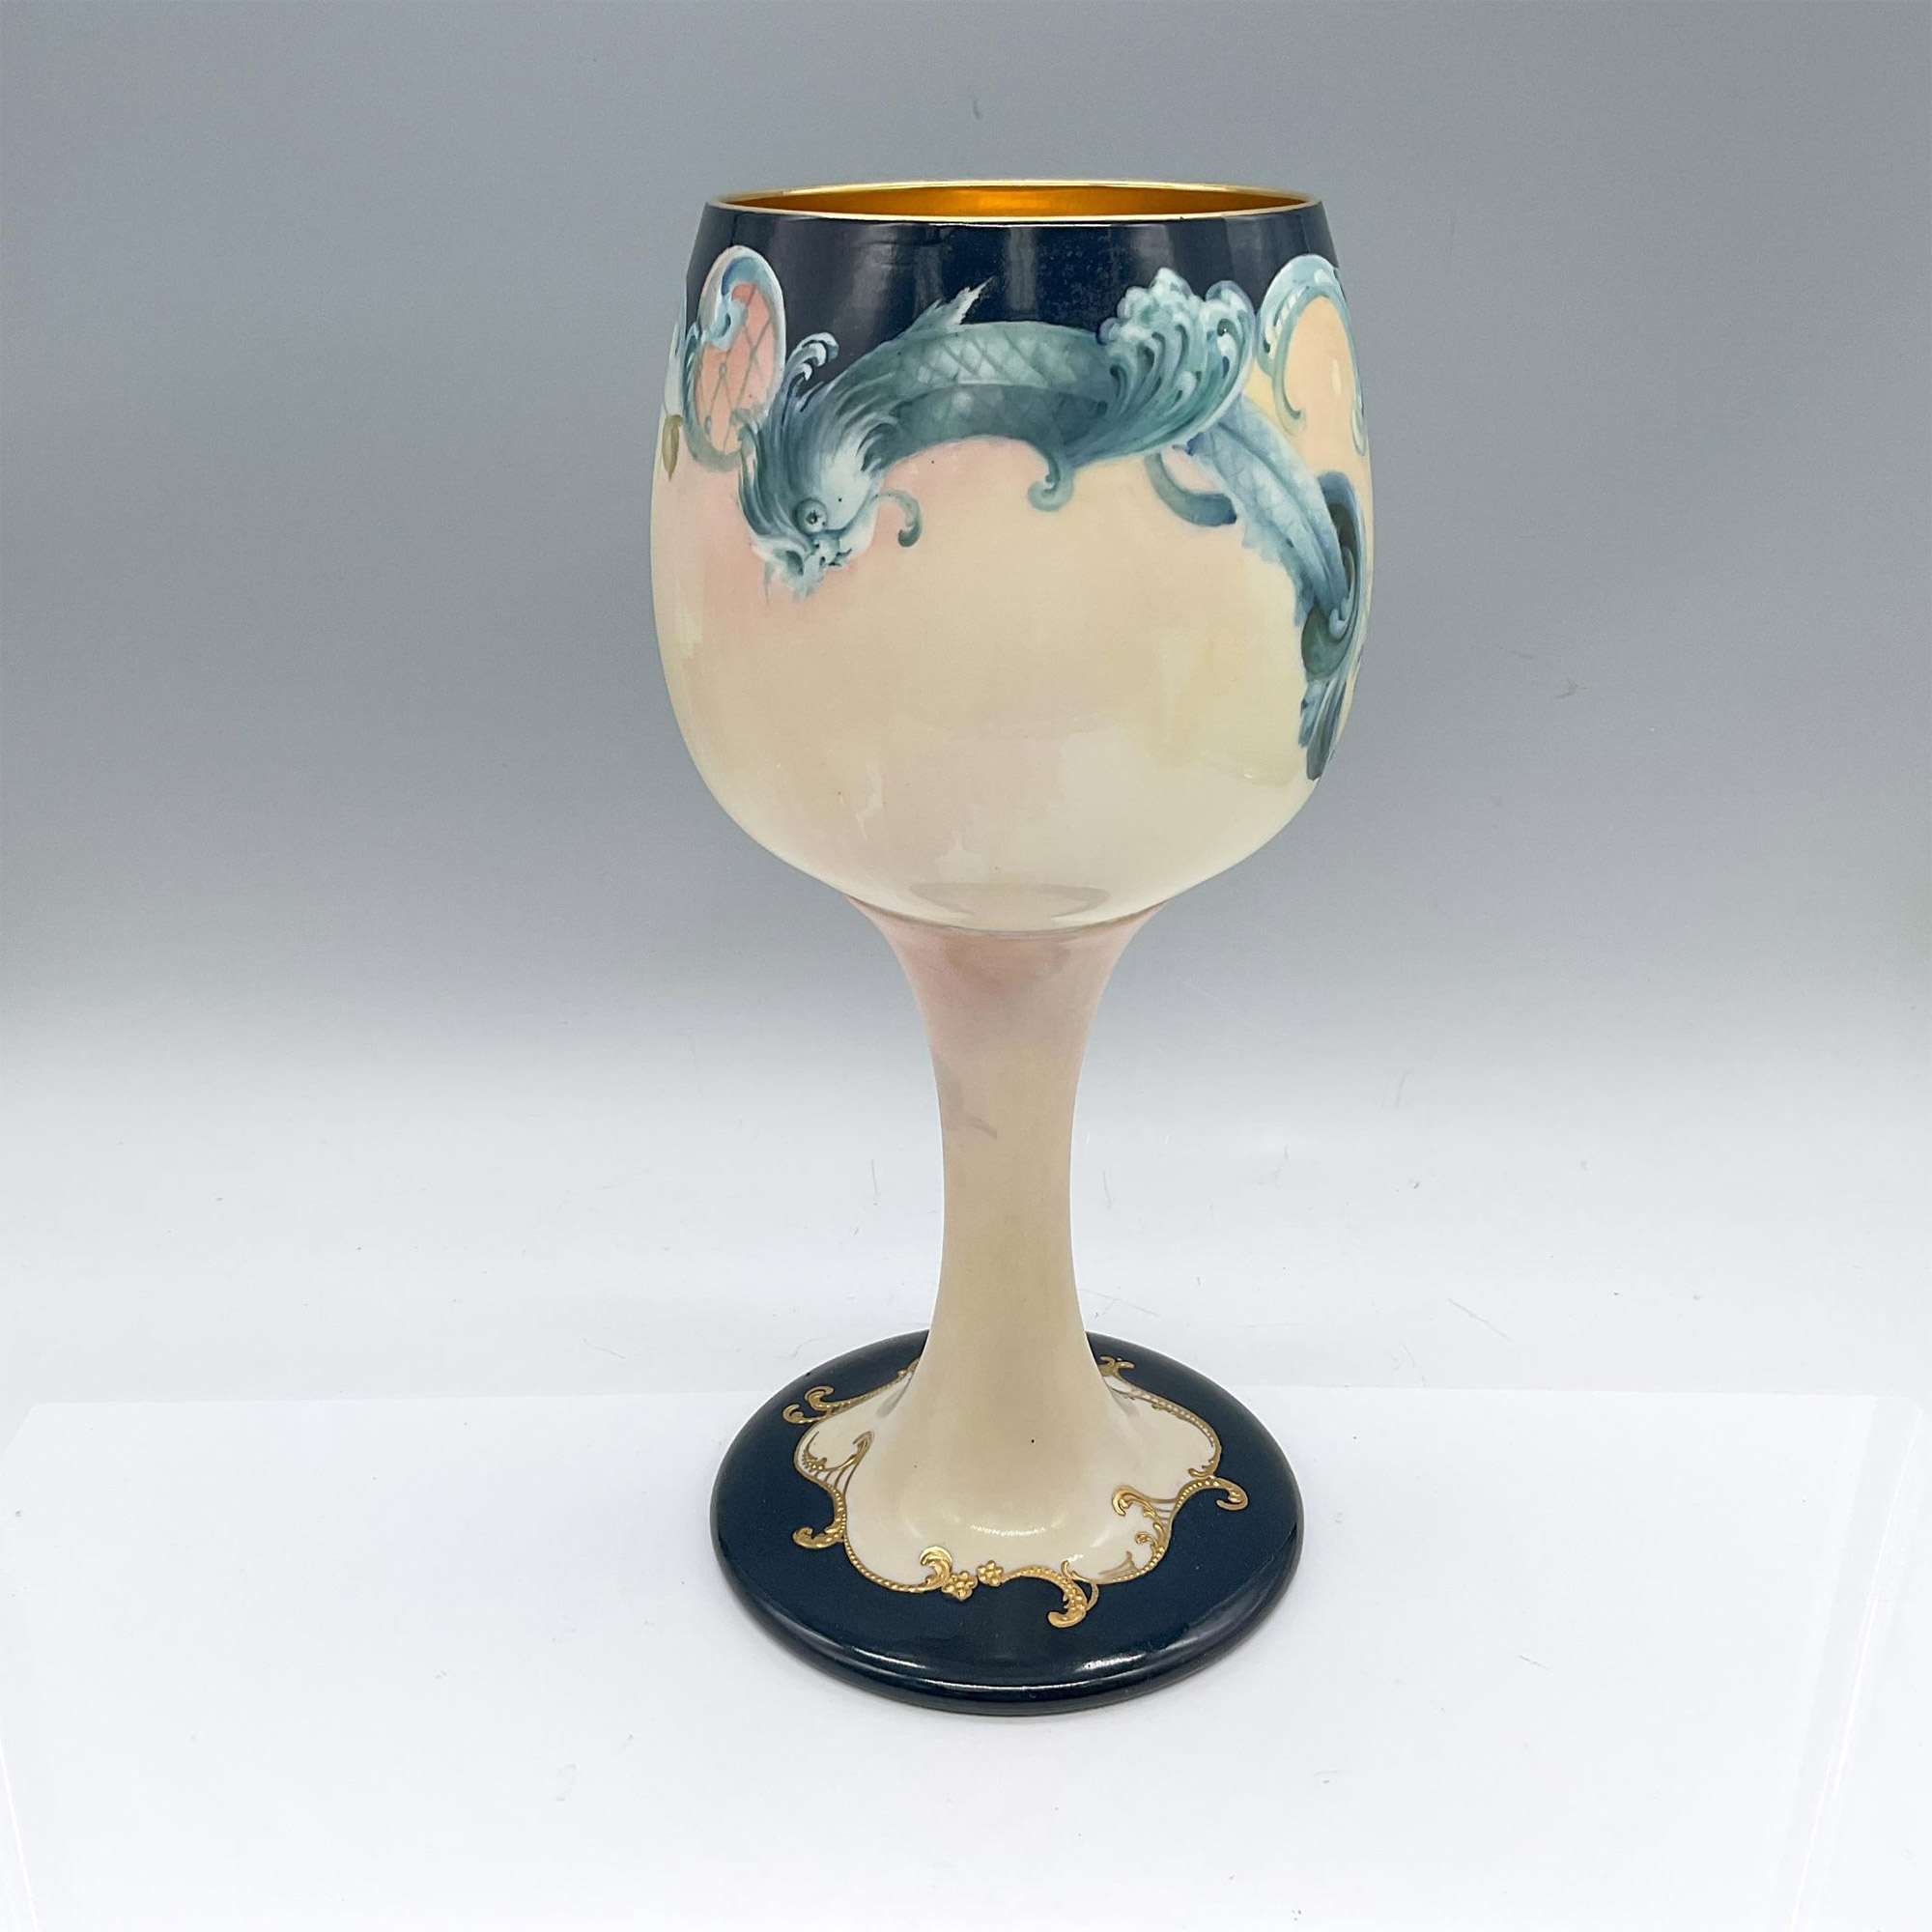 Willets Belleek Porcelain Raspberry Vase - Image 2 of 3